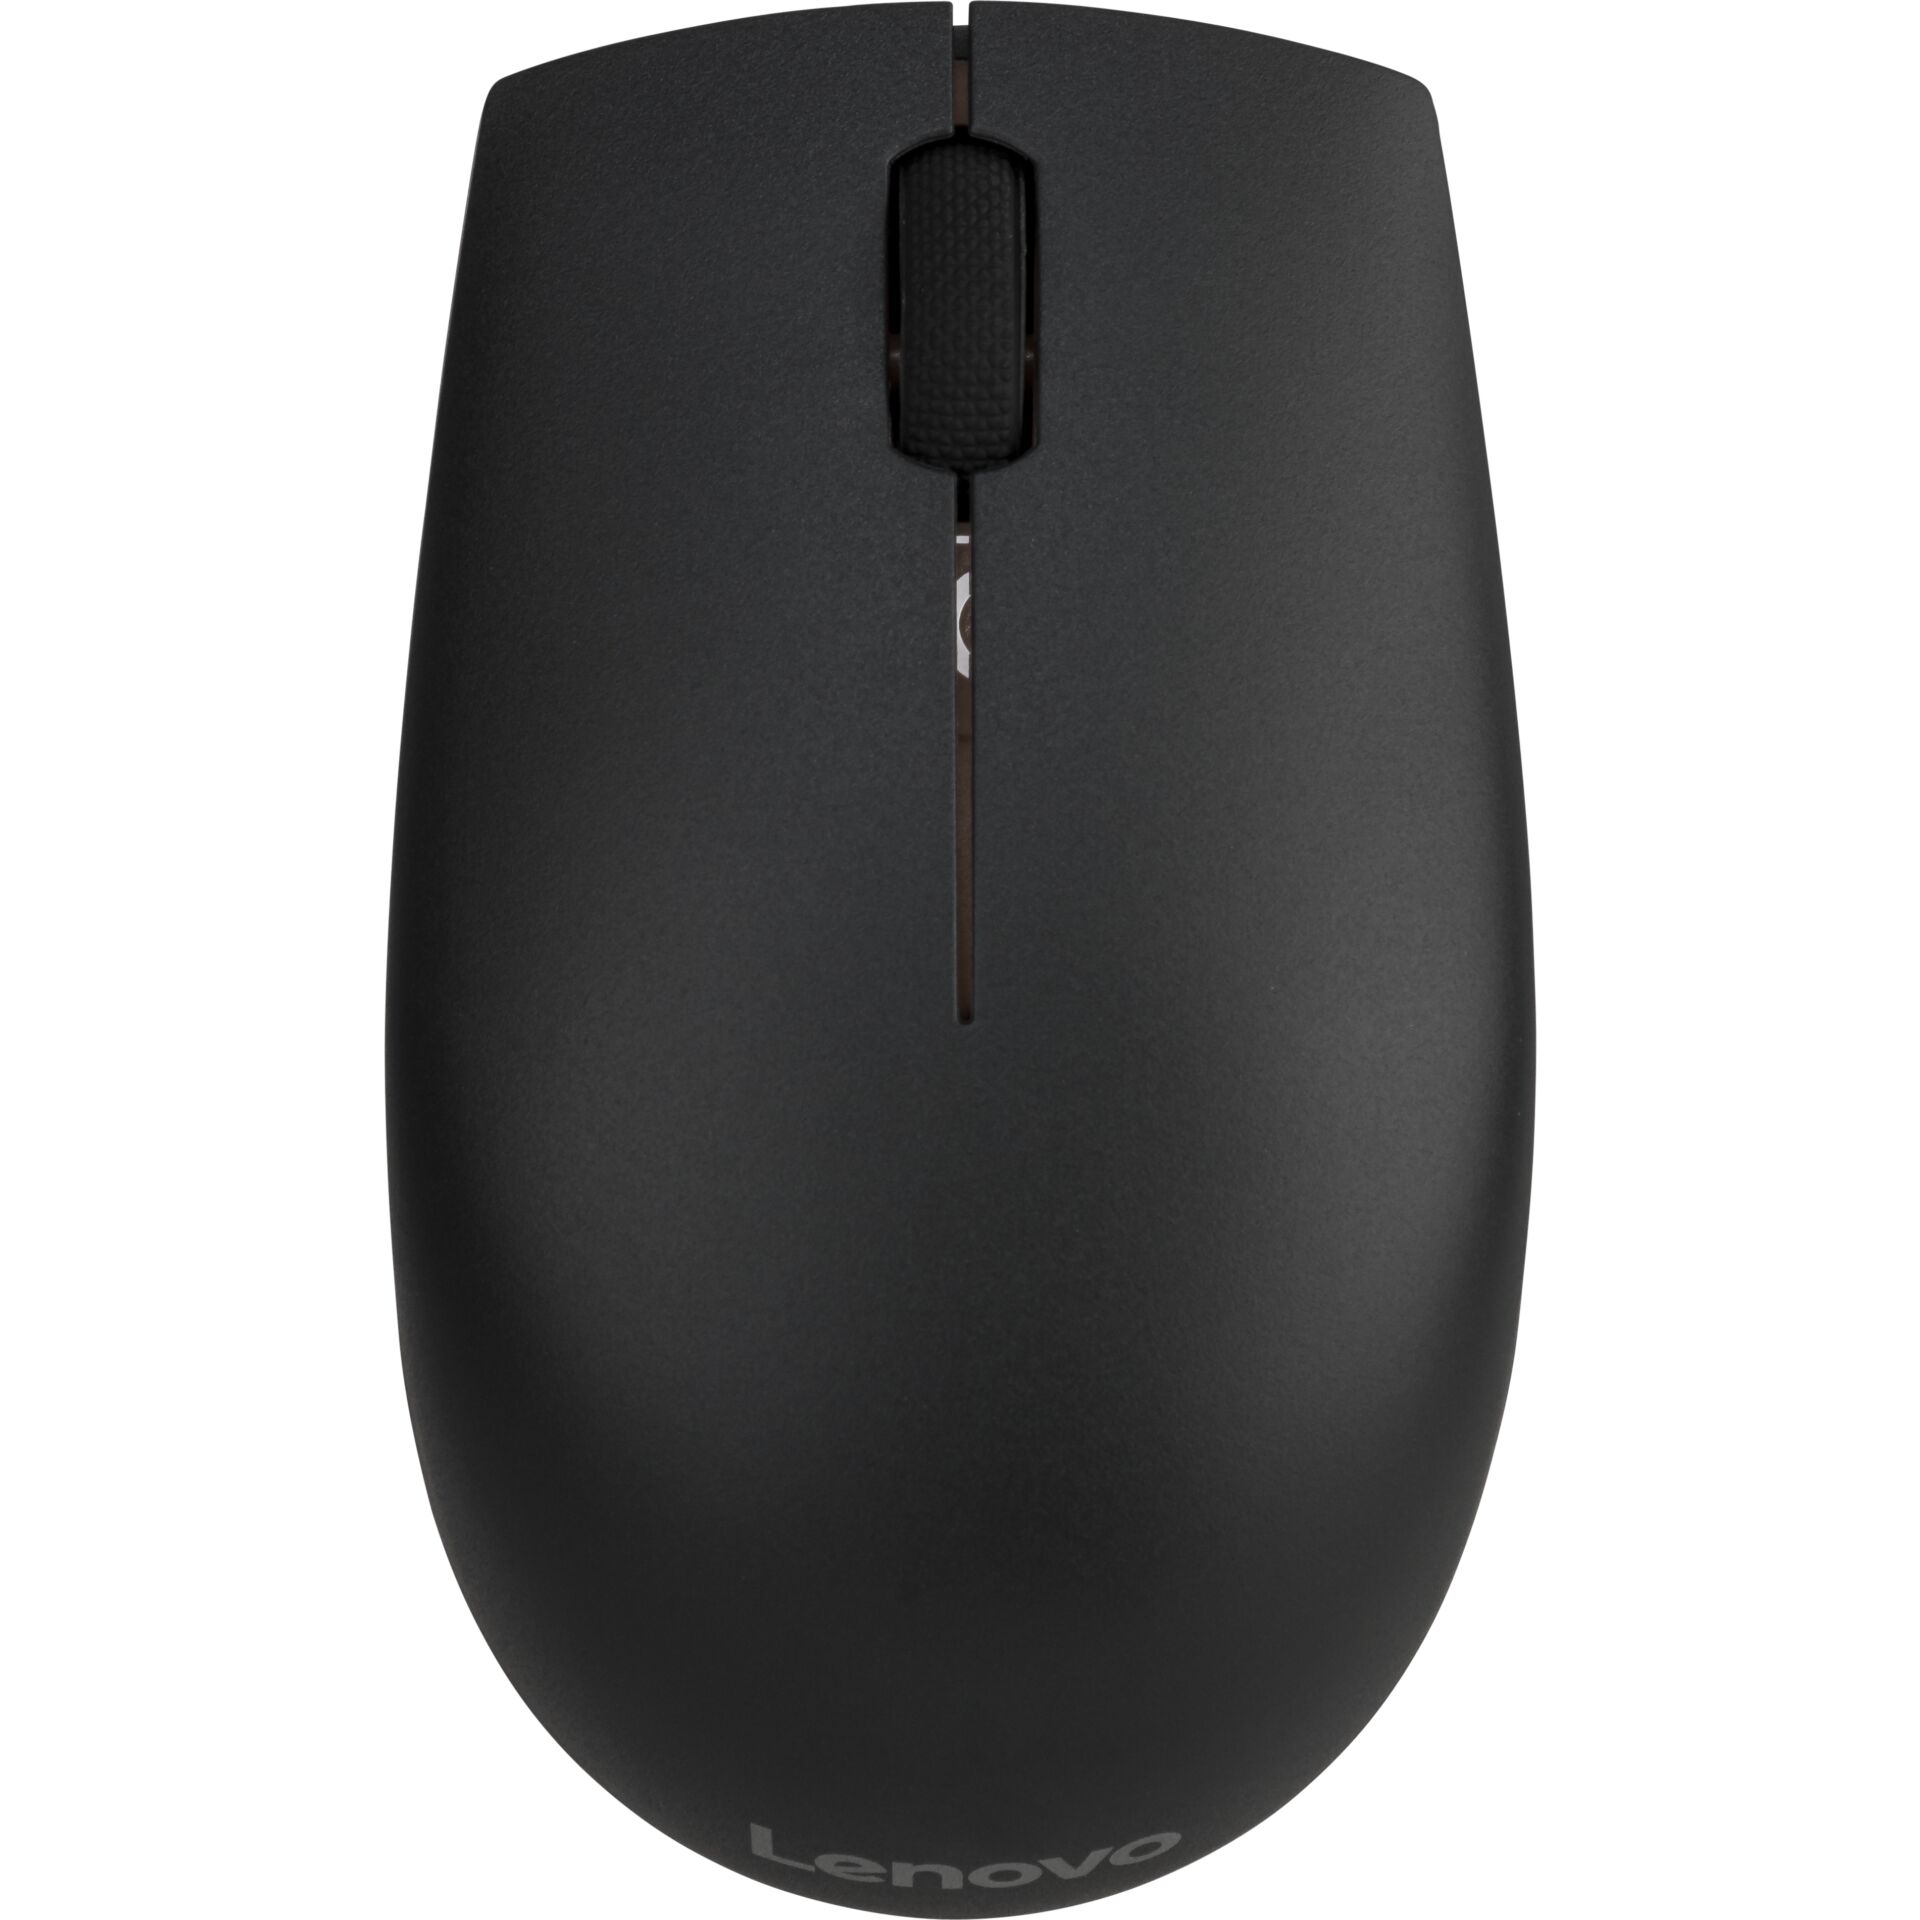 Lenovo 300 nero wireless mouse